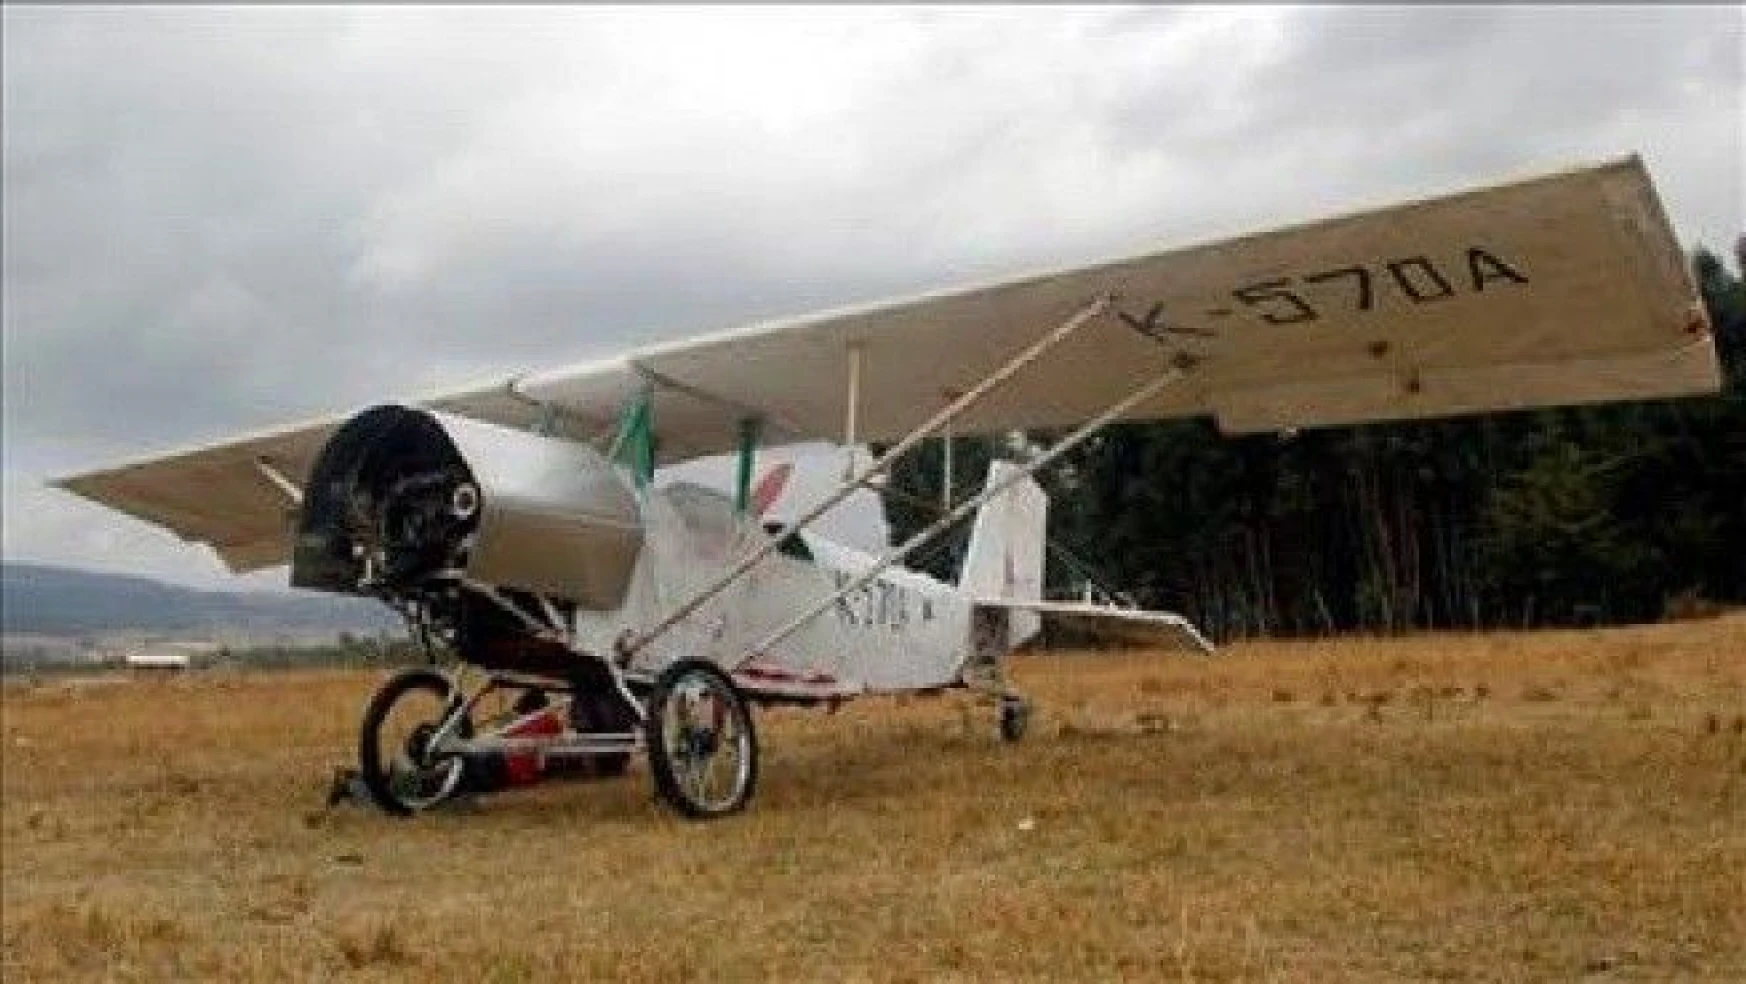 Etiyopyalı mucit kendi olanaklarıyla uçak yaptı